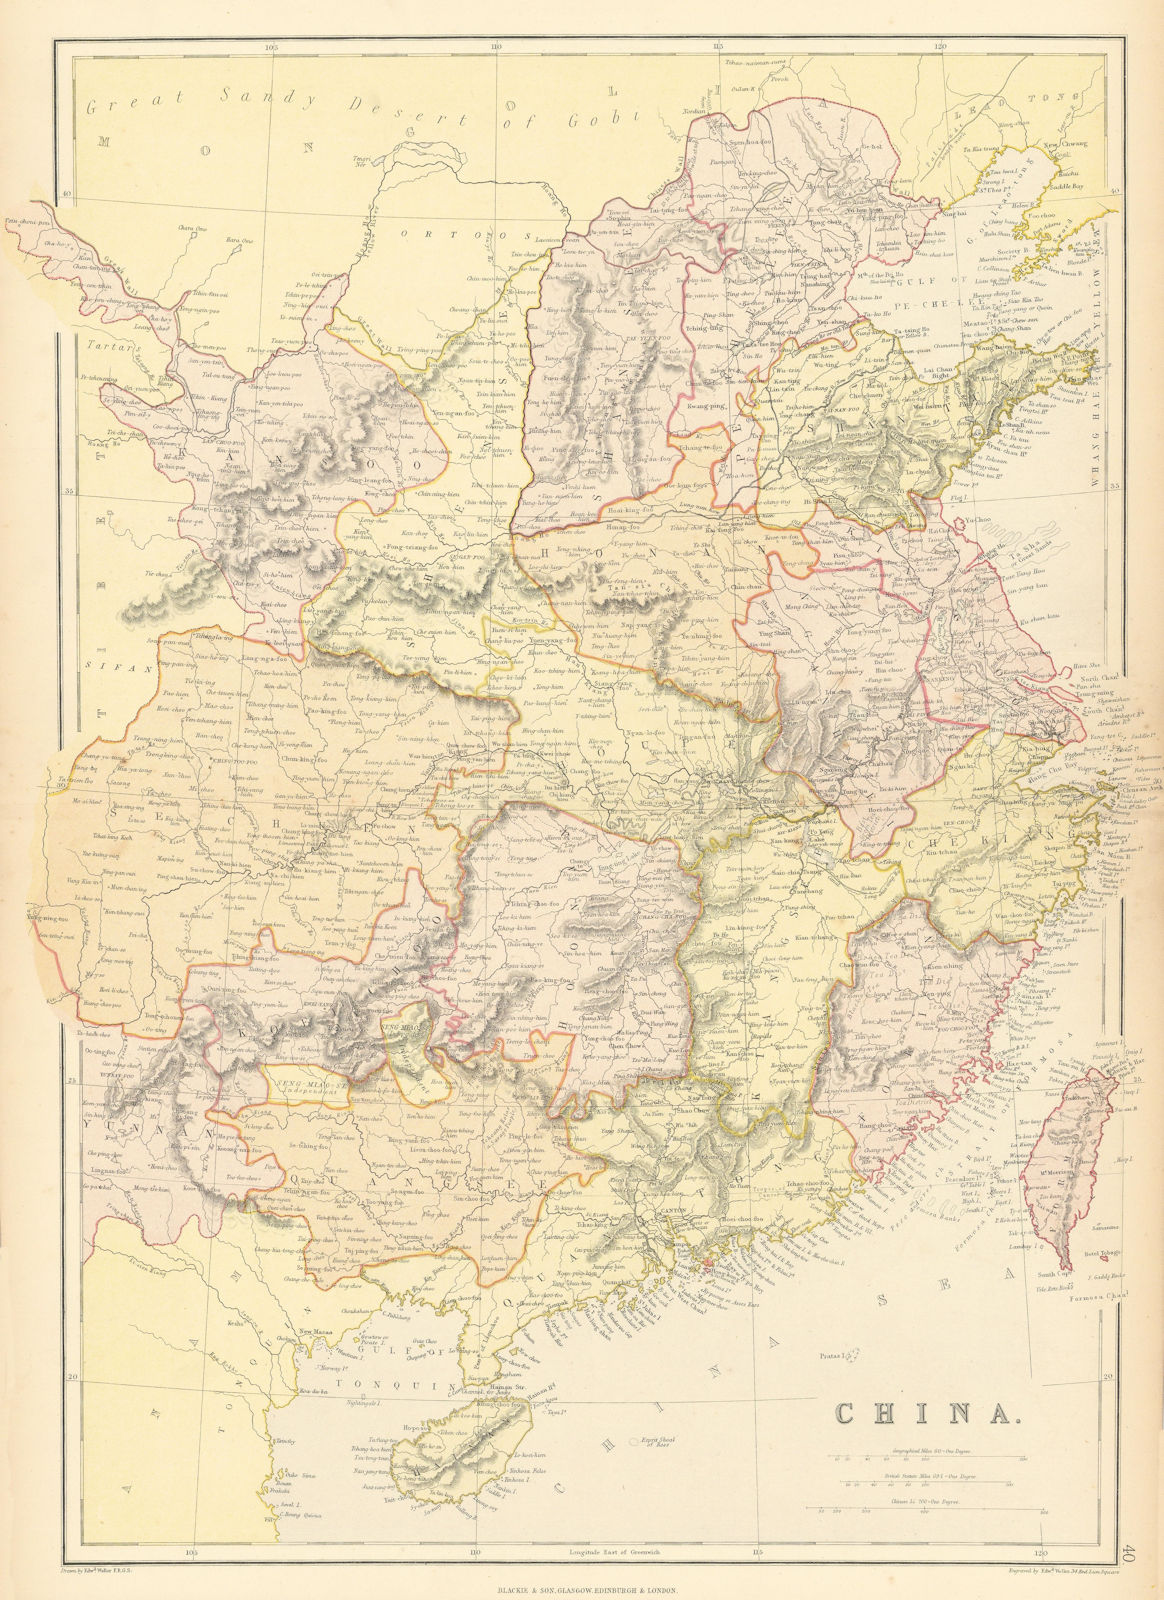 CHINA.Provinces.Hong Kong "Shang-hae"(Shanghai)Canton Guangdong.BLACKIE 1886 map